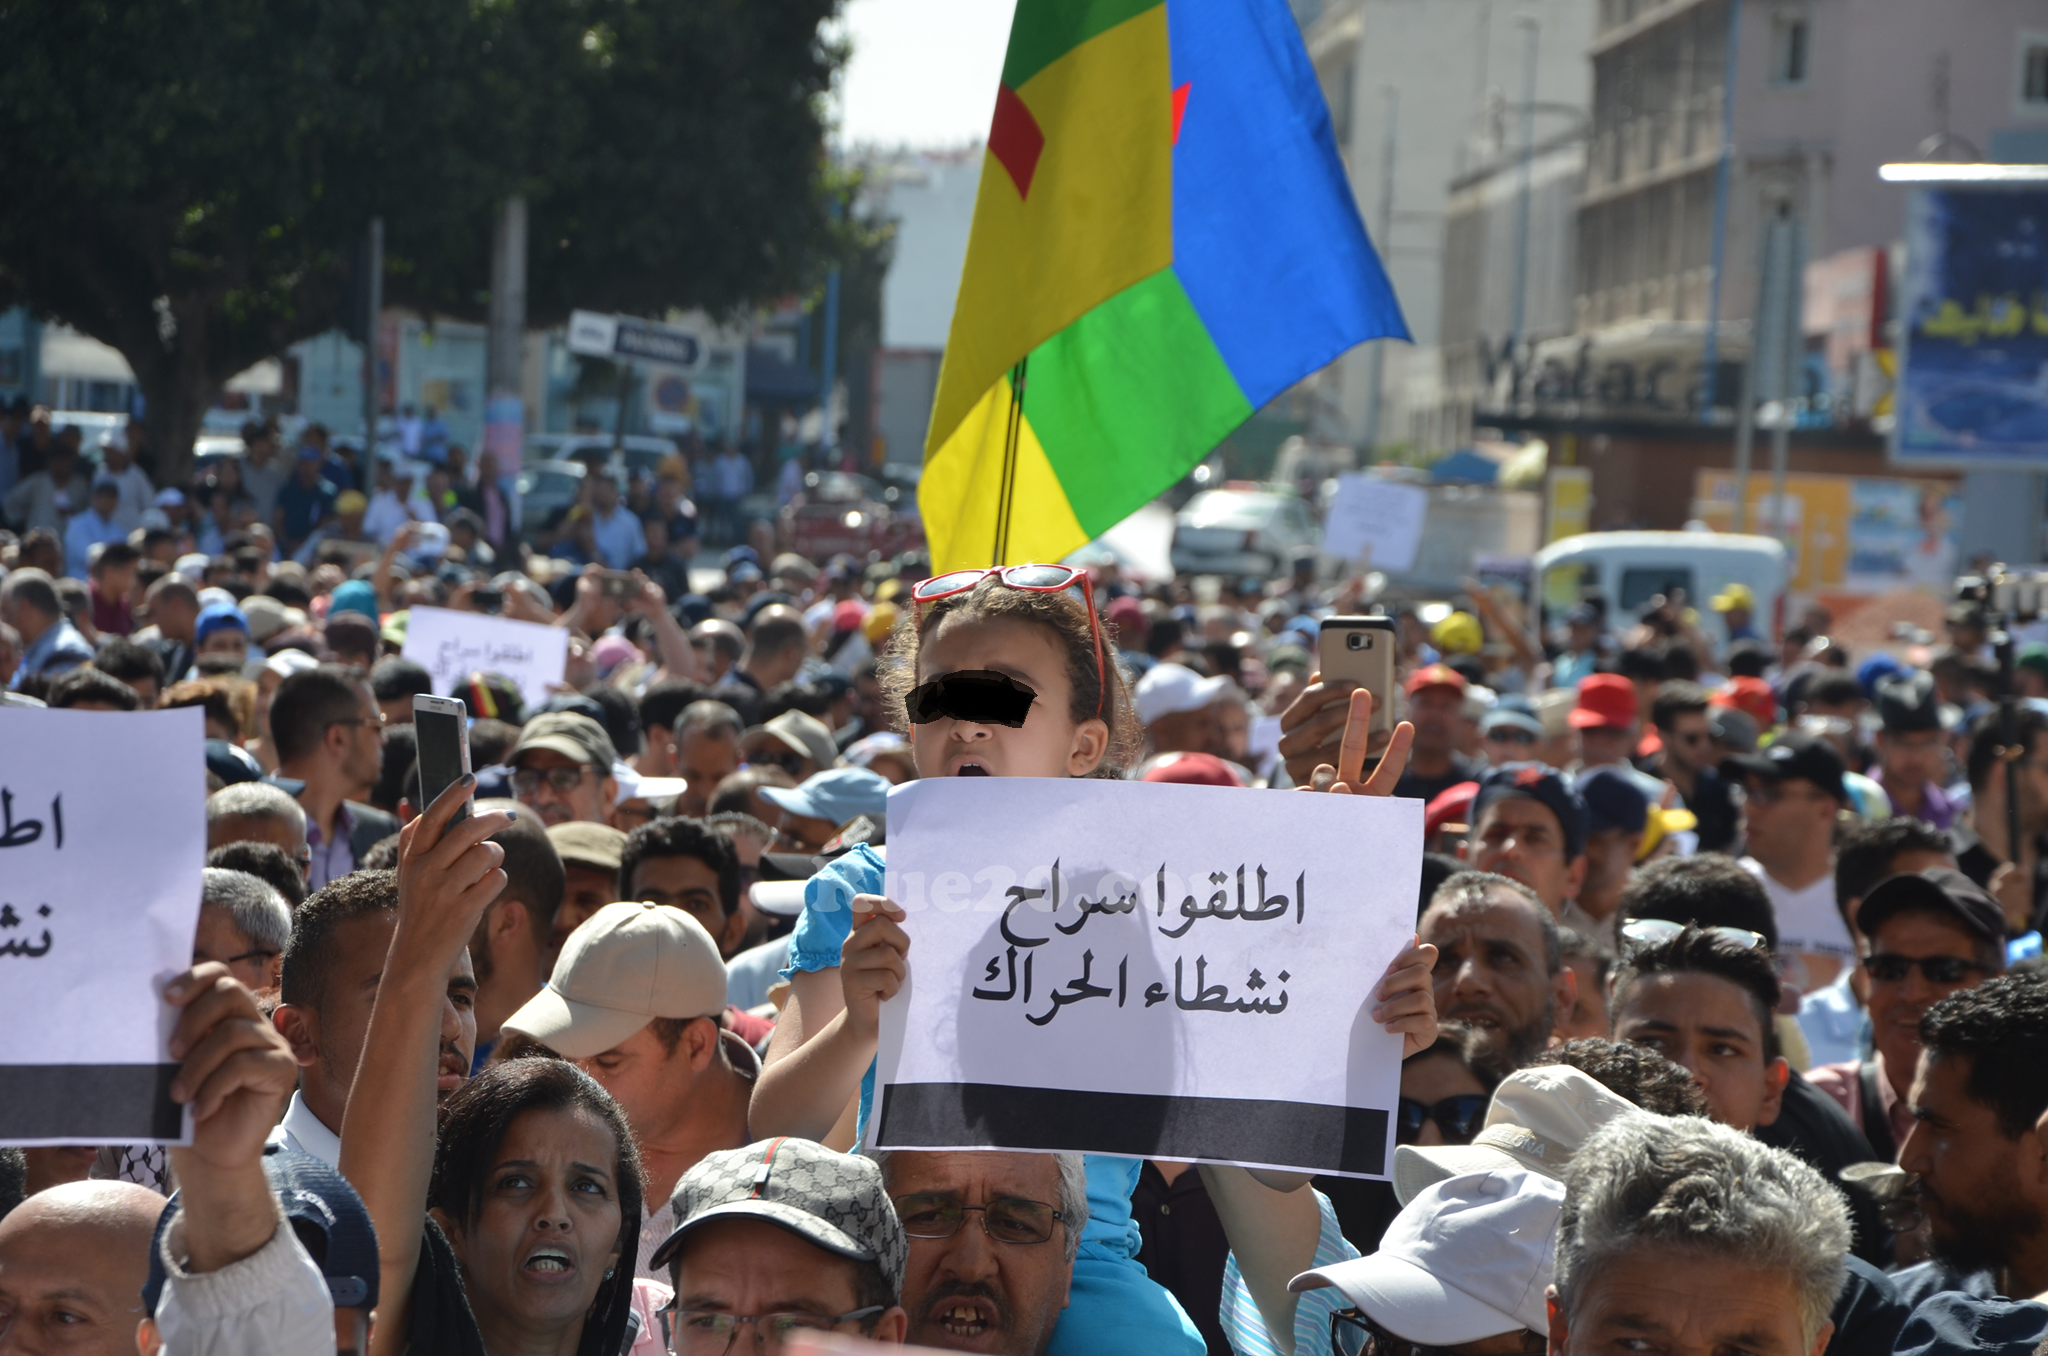 منظمة “أمنستي”: العفو الملكي لحظة إنسانية مفرِحة مع معتقلي الرأي بالمغرب